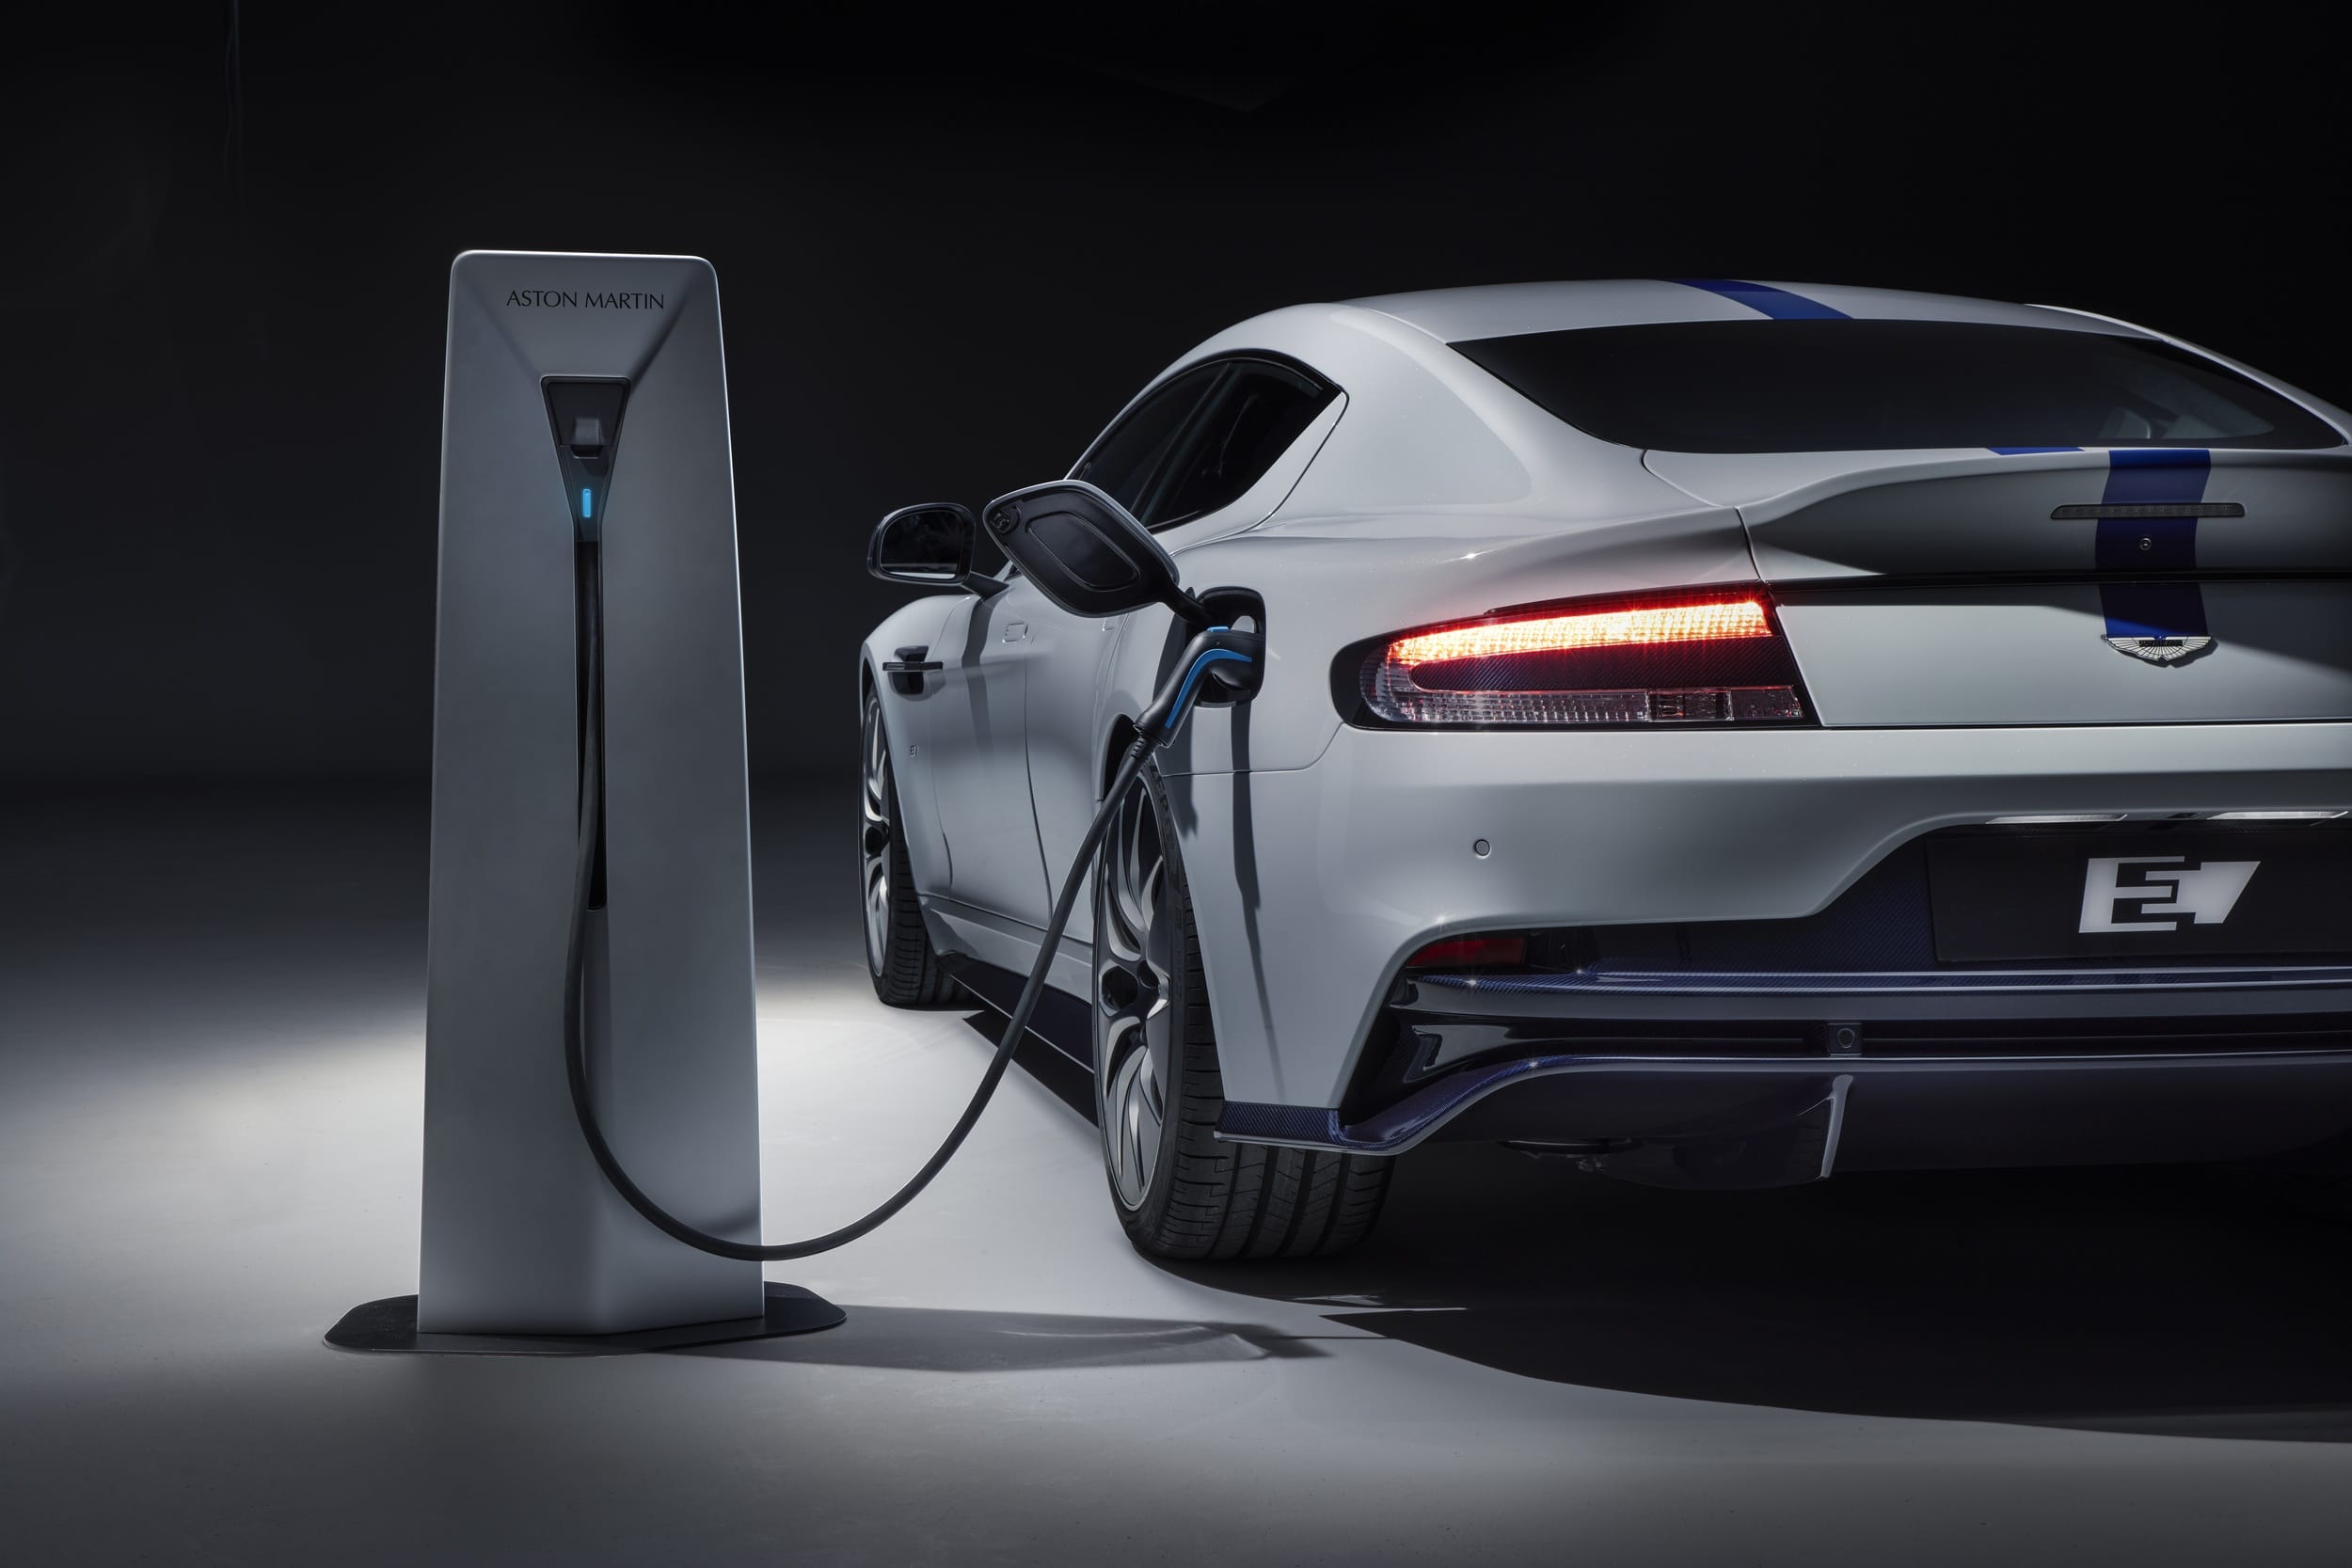 Серийный электромобиль Aston Martin Rapide E представлен официально пара электродвигателей мощностью 610 л.с. на задней оси батарея на 65 кВтч